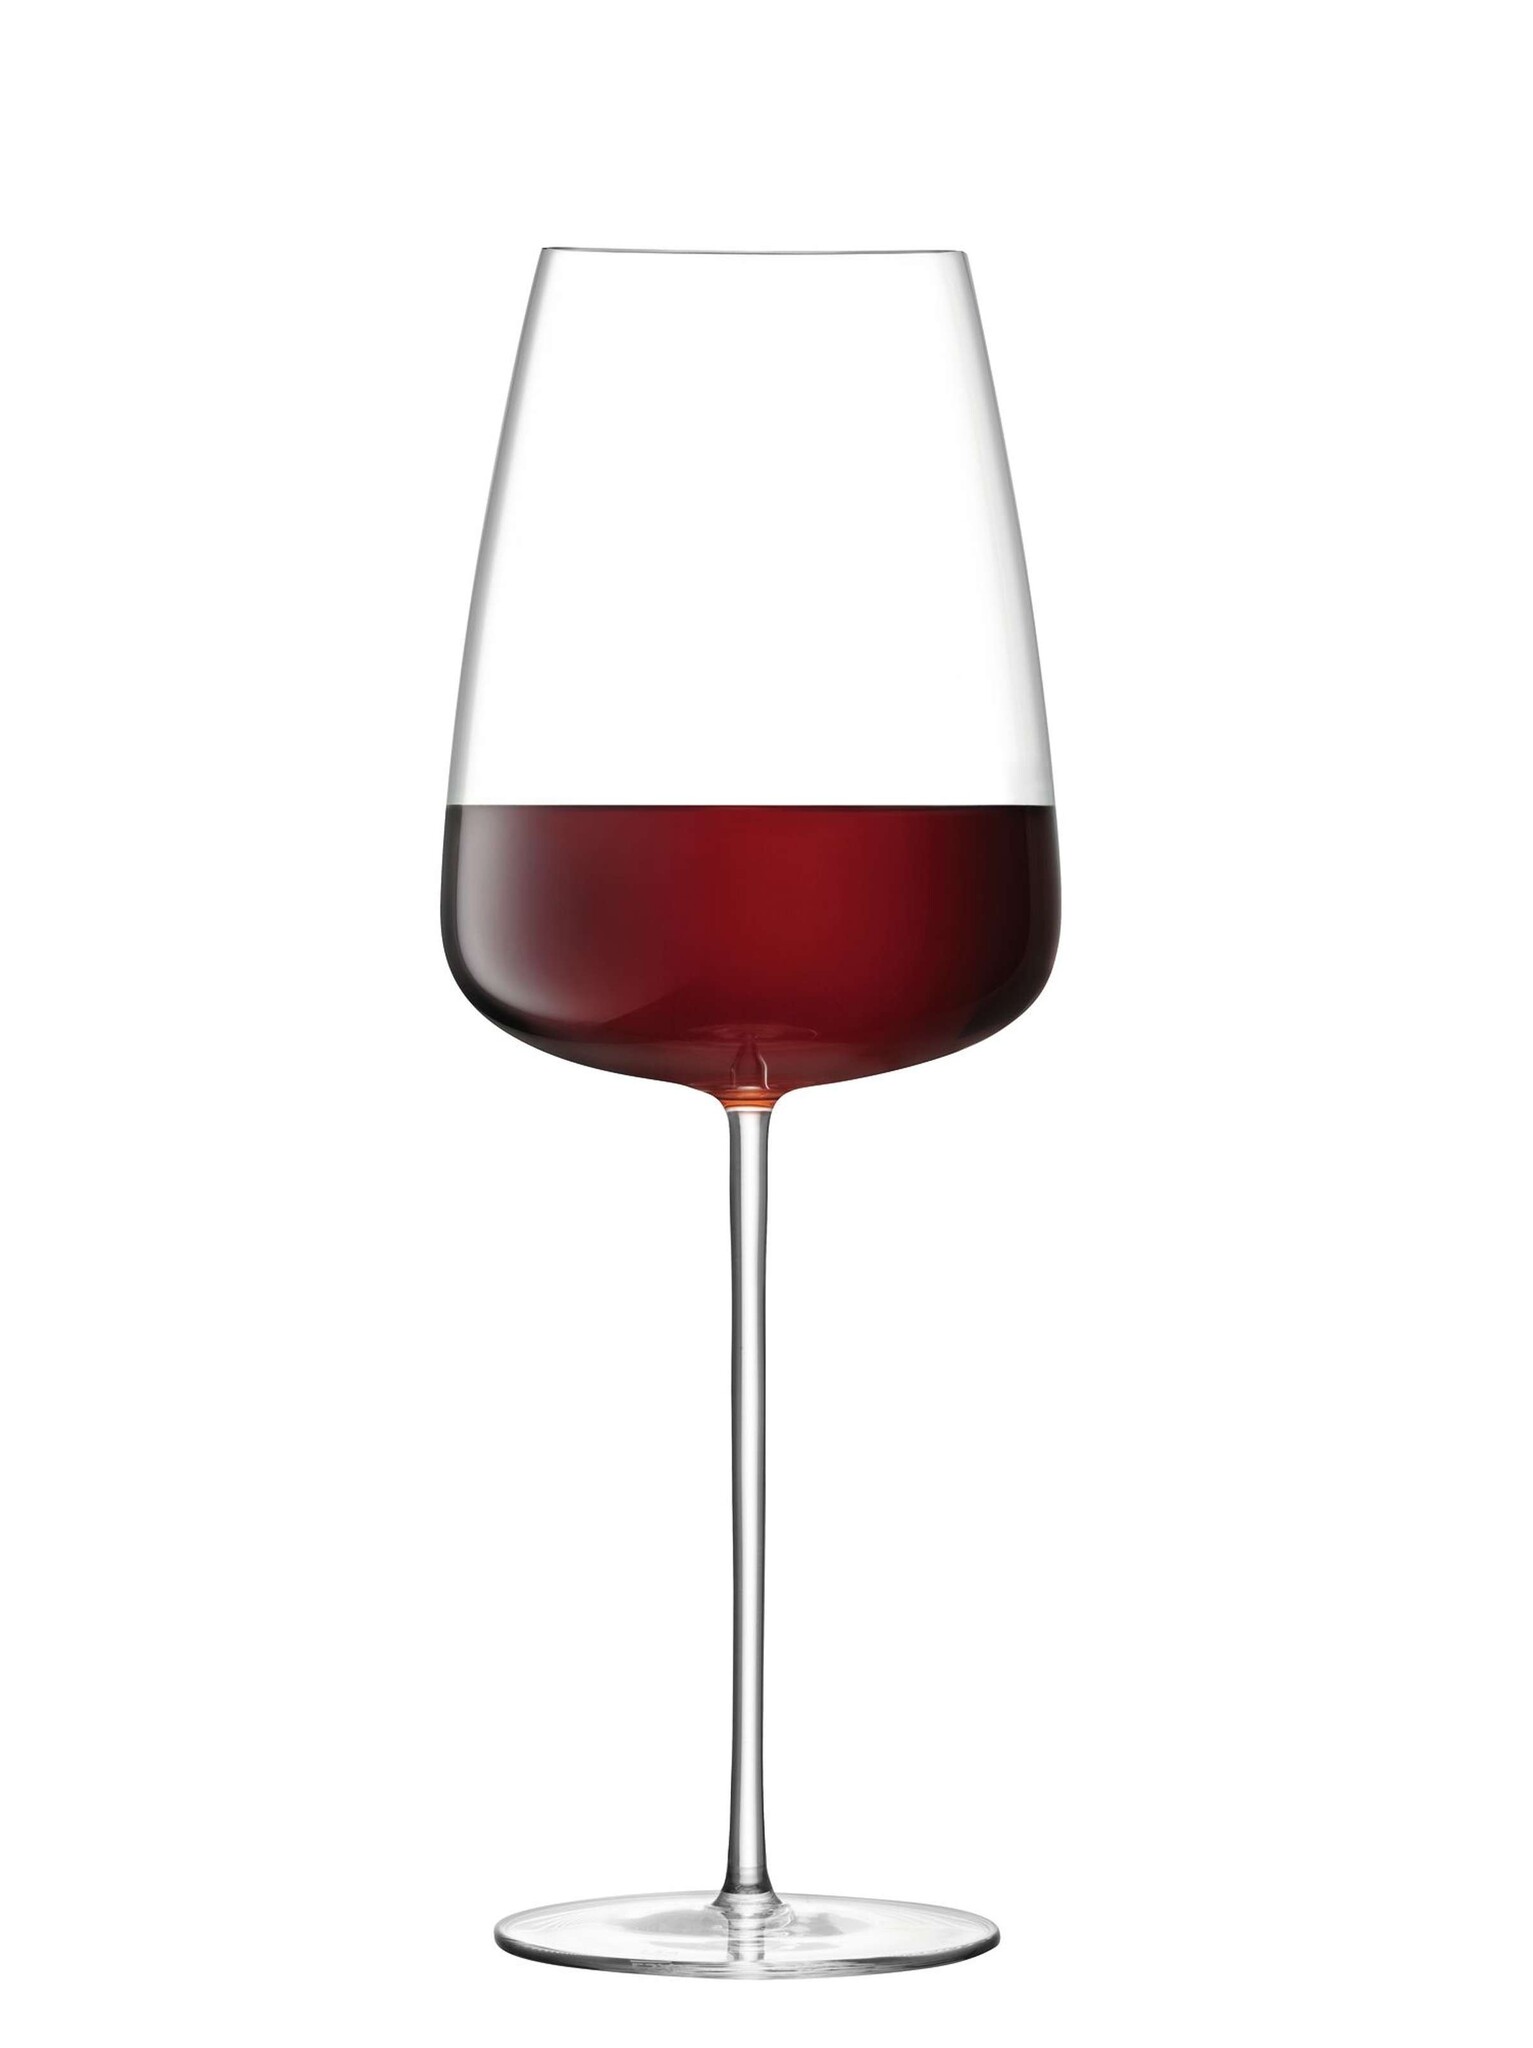 L.S.A. Wine Culture Wijnglas 800 ml Set van 2 Stuks